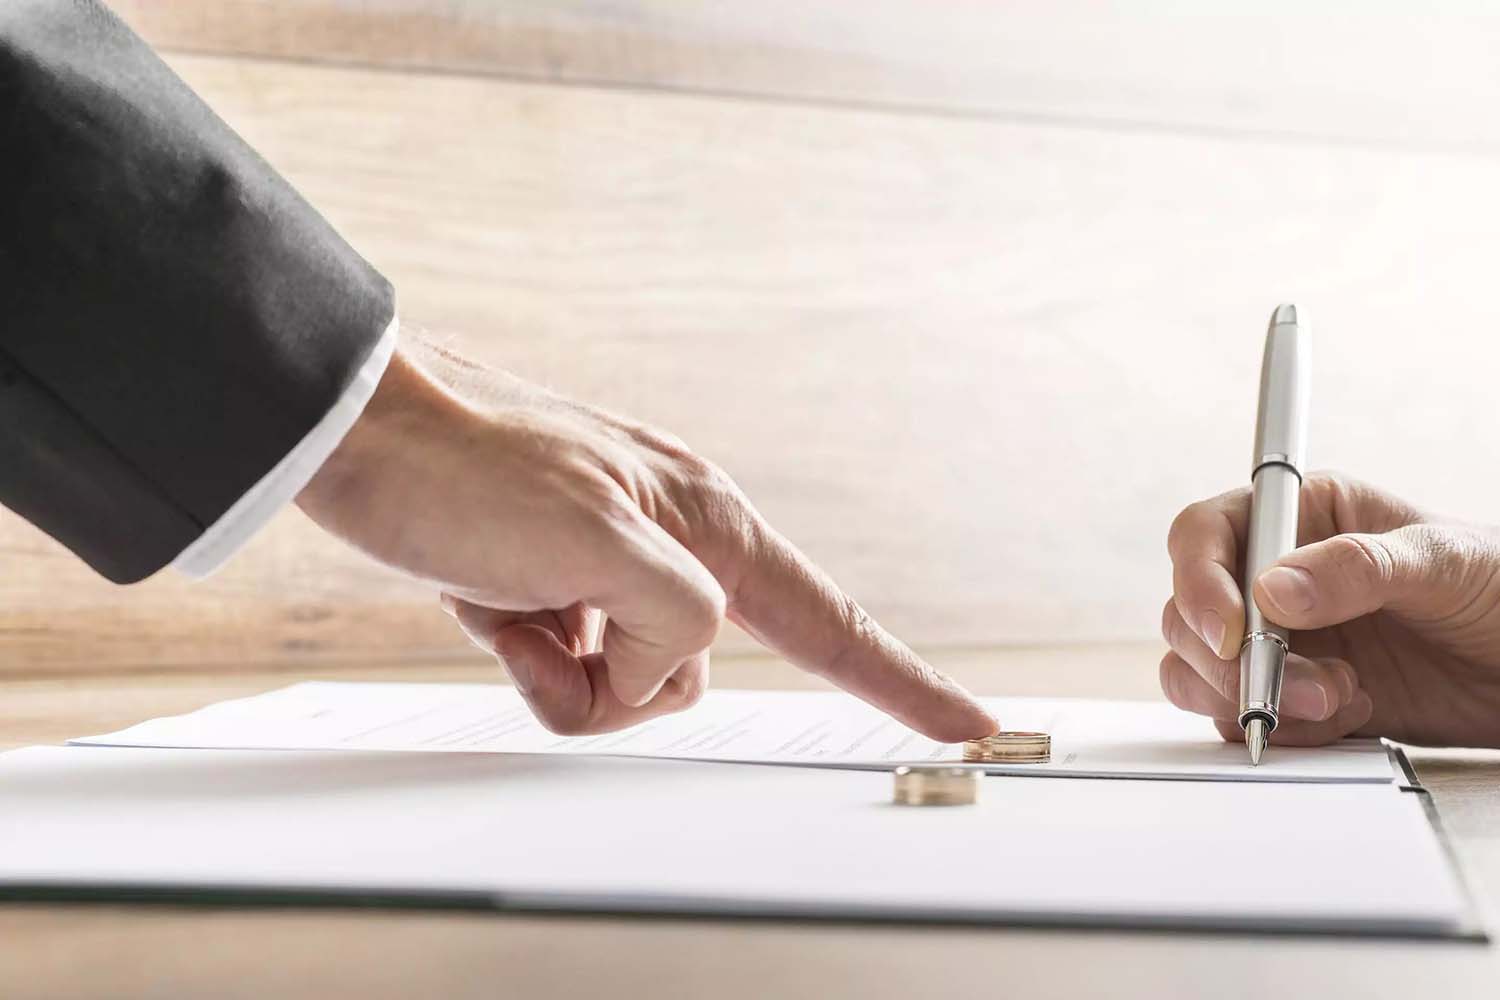 Cliente firmando contrato prenuncial con abogado. Se ve el contrato y los anillos matrimoniales